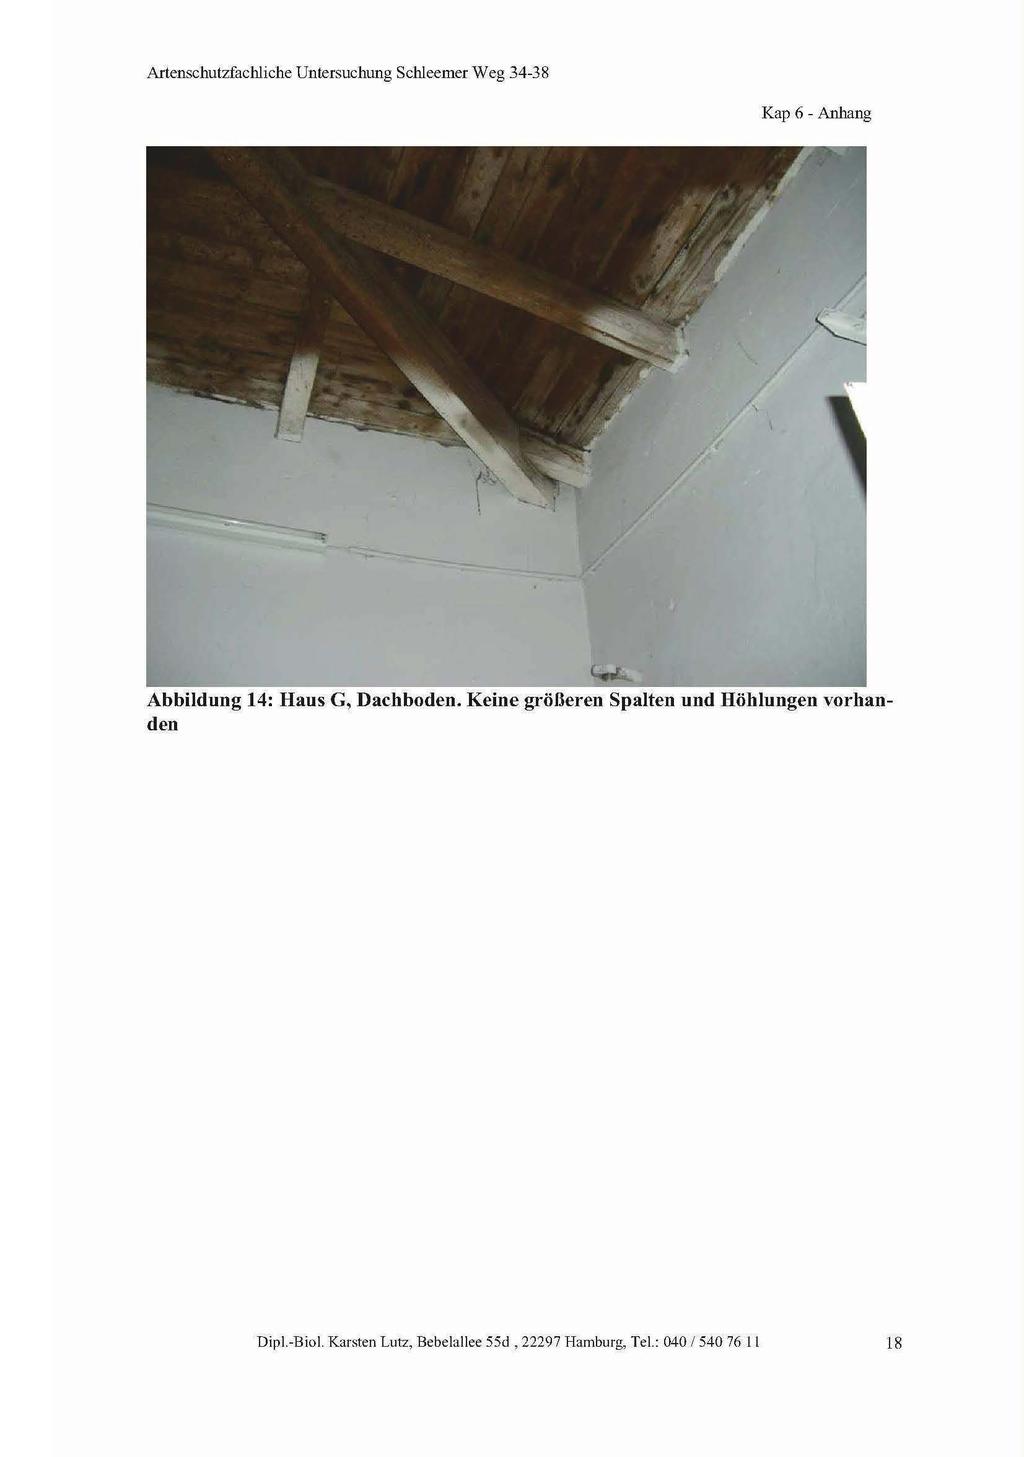 Kap 6 - Anhang Abbildung 14: Haus G, Dachboden.